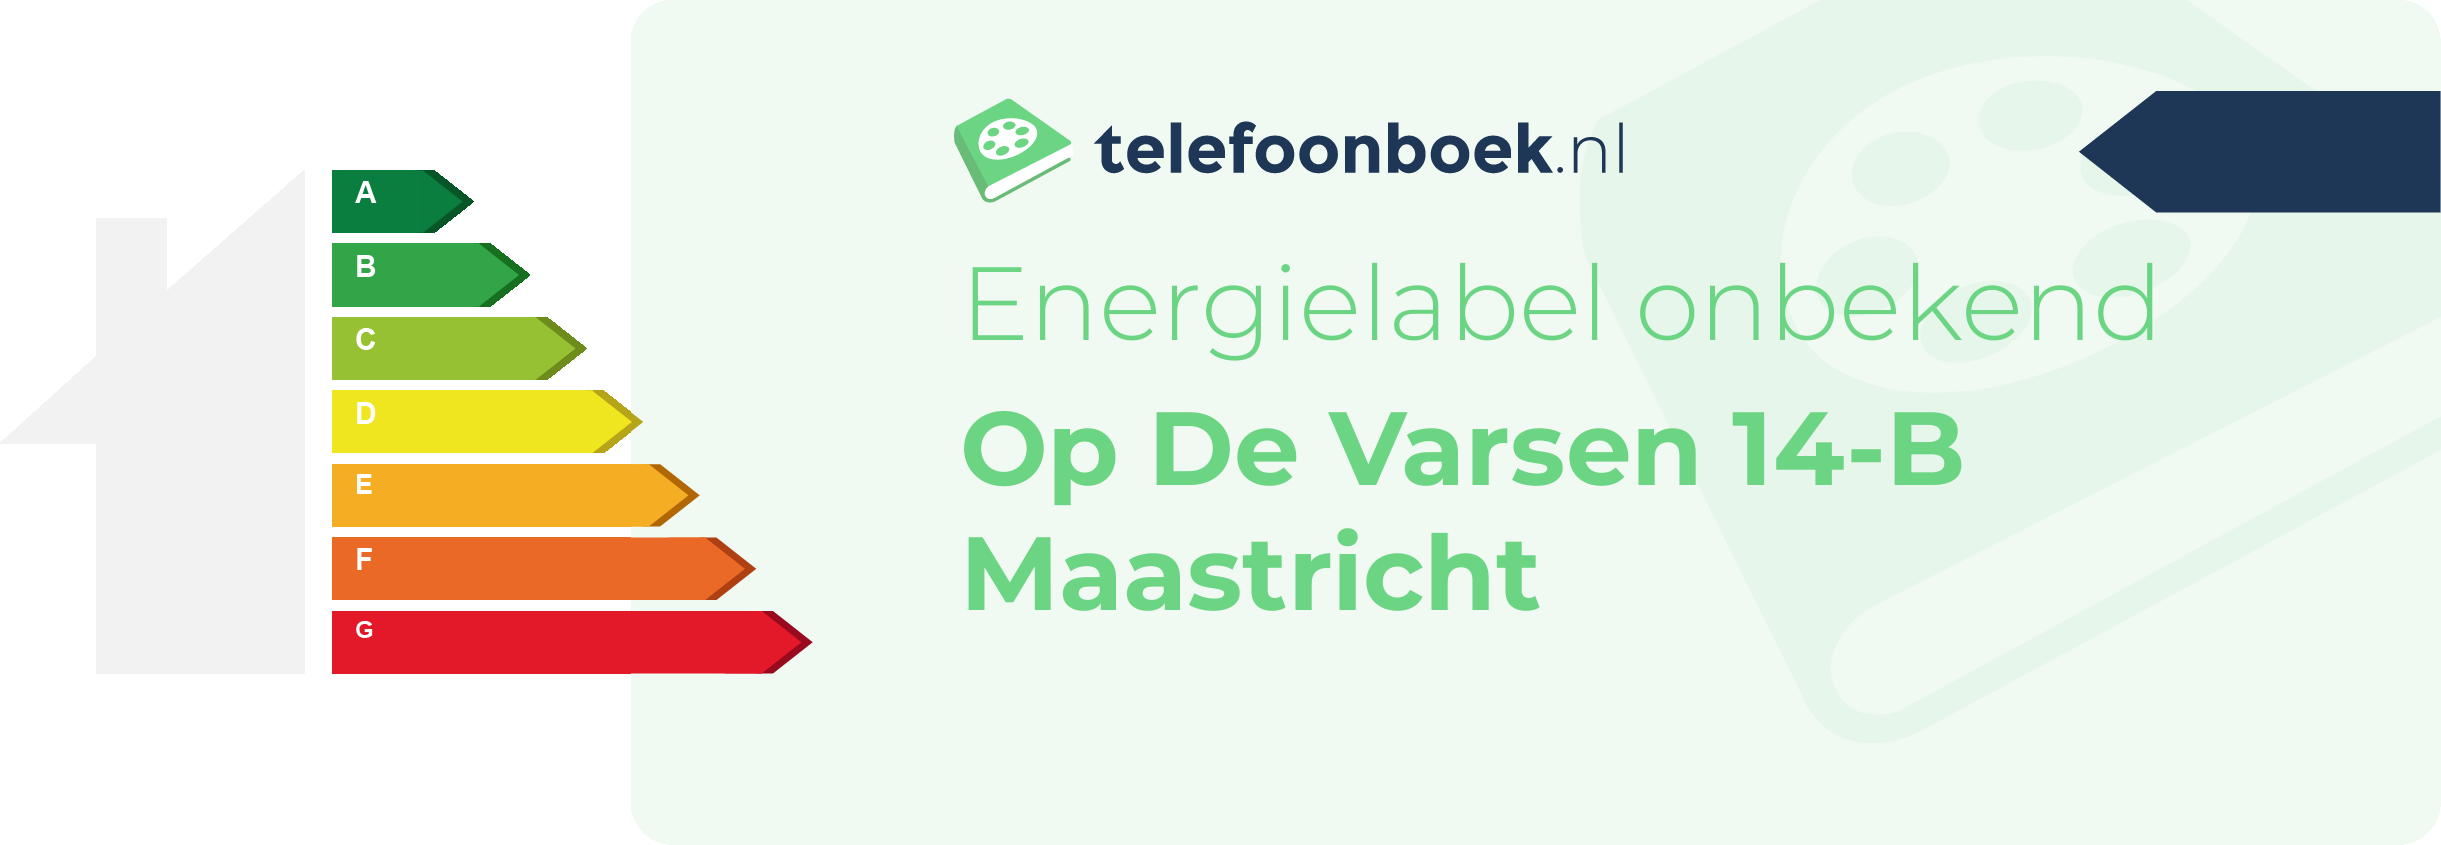 Energielabel Op De Varsen 14-B Maastricht